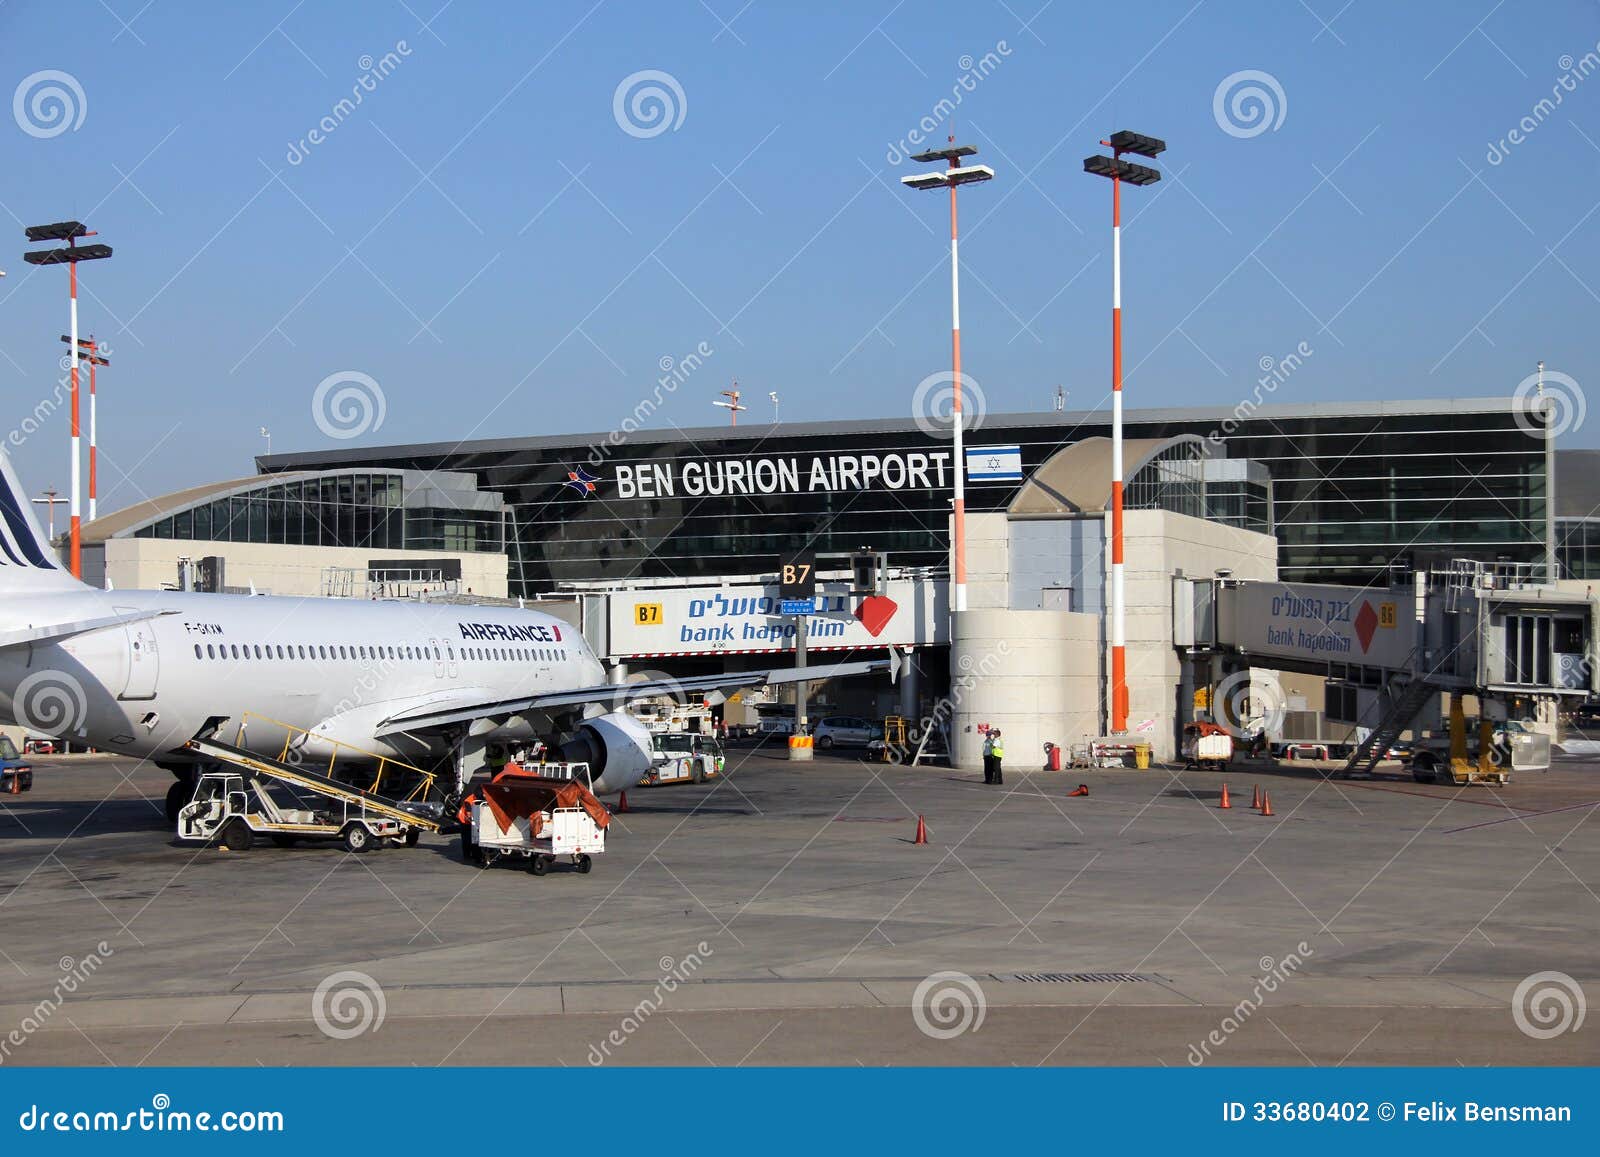 Ben Gurion International Airport à Tel Aviv, Israël, une de la meilleures sécurité et importantes mesures de sécurité dans l'industrie du monde